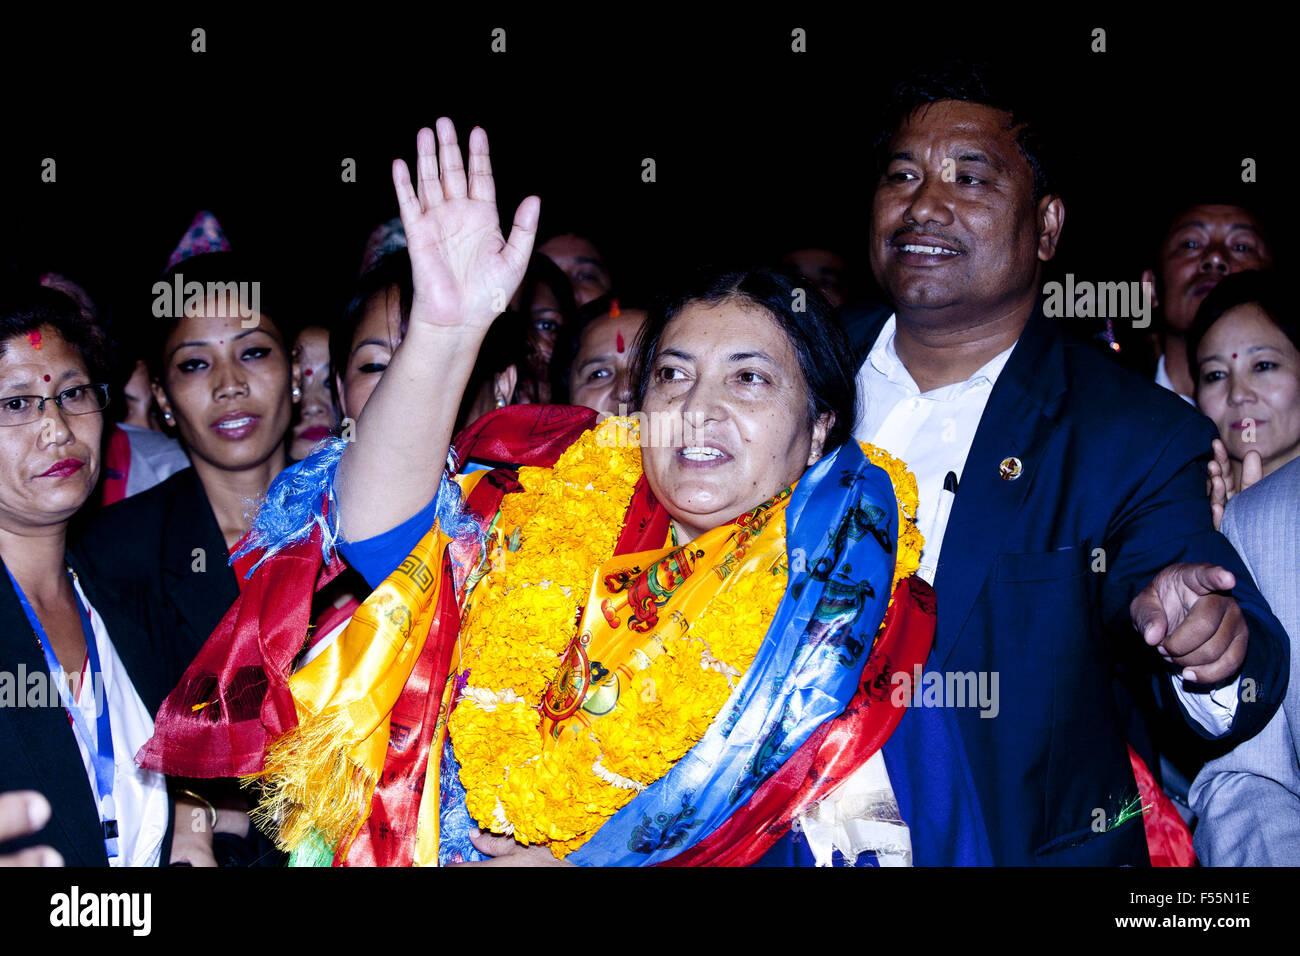 (151028) -- Kathmandu, 28 ottobre 2015 (Xinhua) -- Bidhya Devi Bhandari (C), Vice Presidente del Partito comunista del Nepal (Unified marxisti-leninisti), i gesti dopo aver vinto le elezioni al Legislature-Parliament house di Kathmandu, Nepal, 28 ottobre 2015. Del Nepal (CPN UML)'S Vice Presidente Bidhya Devi Bhandari è stato eletto il primo presidente donna del Nepal mercoledì, per la prima volta nella storia del patriarcato-backed nazione himalayana di grazia il titolo di capo dello stato ad ogni donna. (Xinhua/Pratap Thapa) Foto Stock